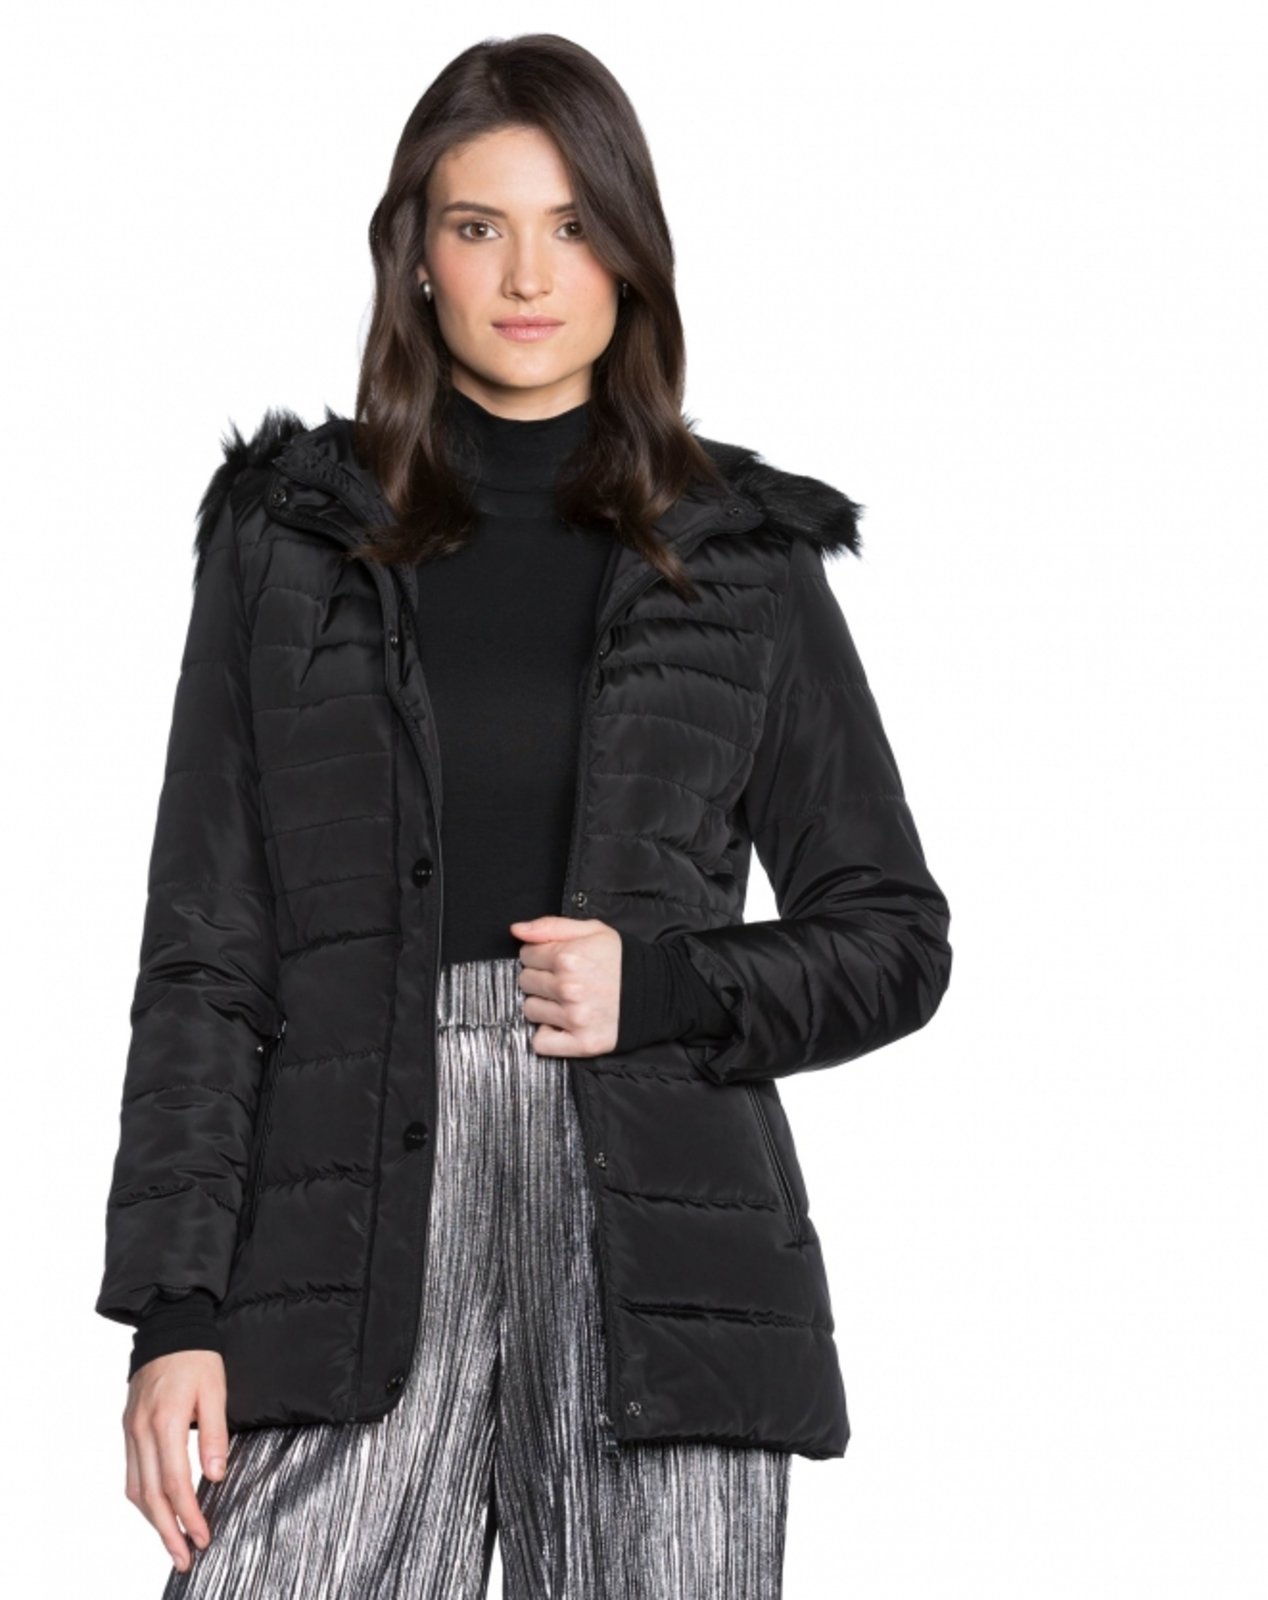 casaco sobretudo nylon feminino